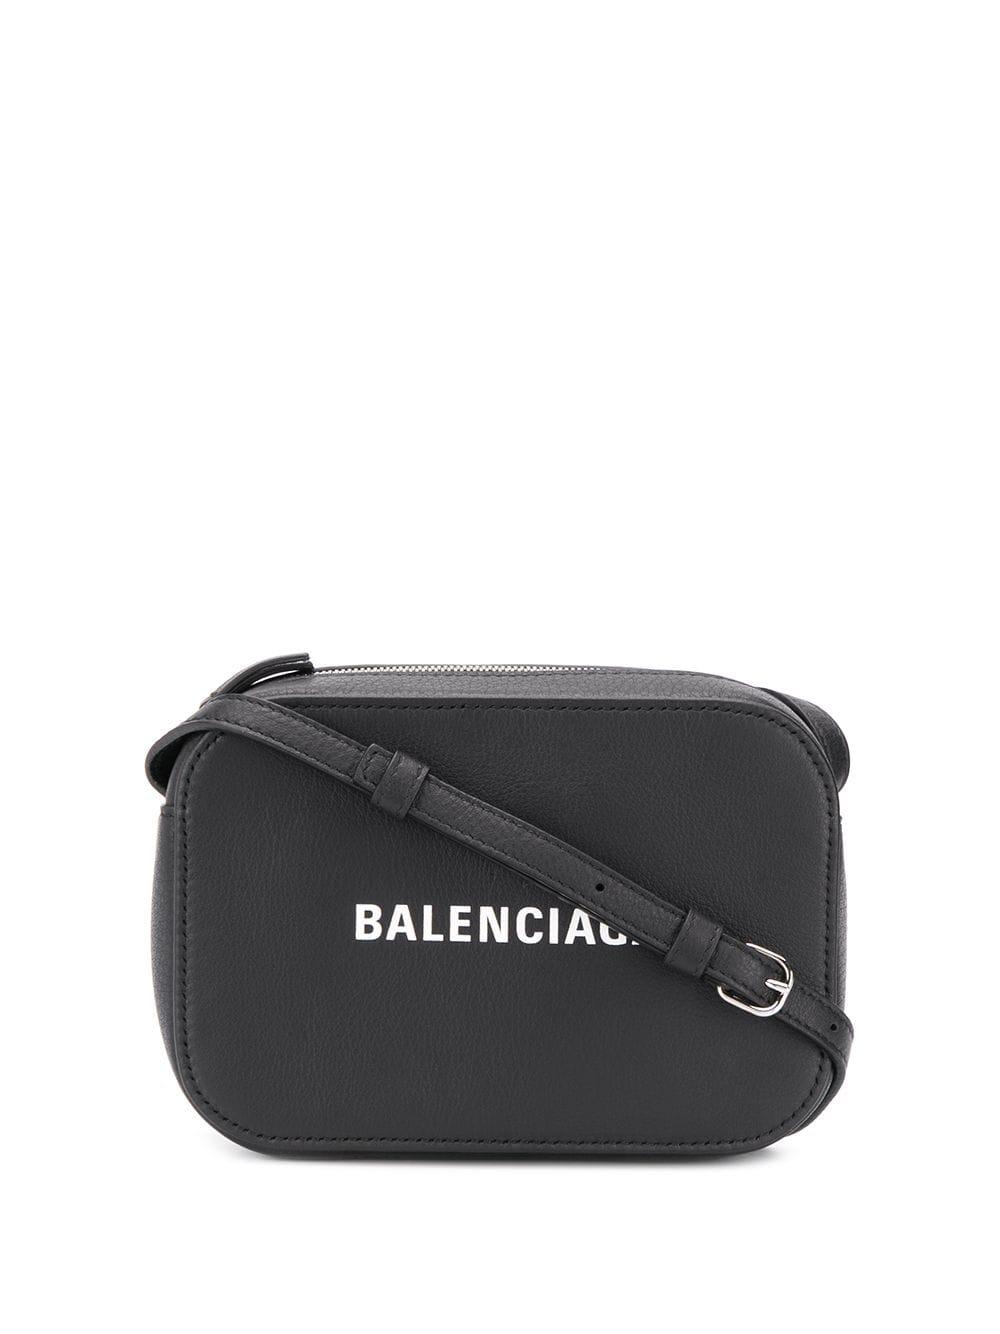 Balenciaga Everyday Xs Crossbody Bag in Black - Lyst